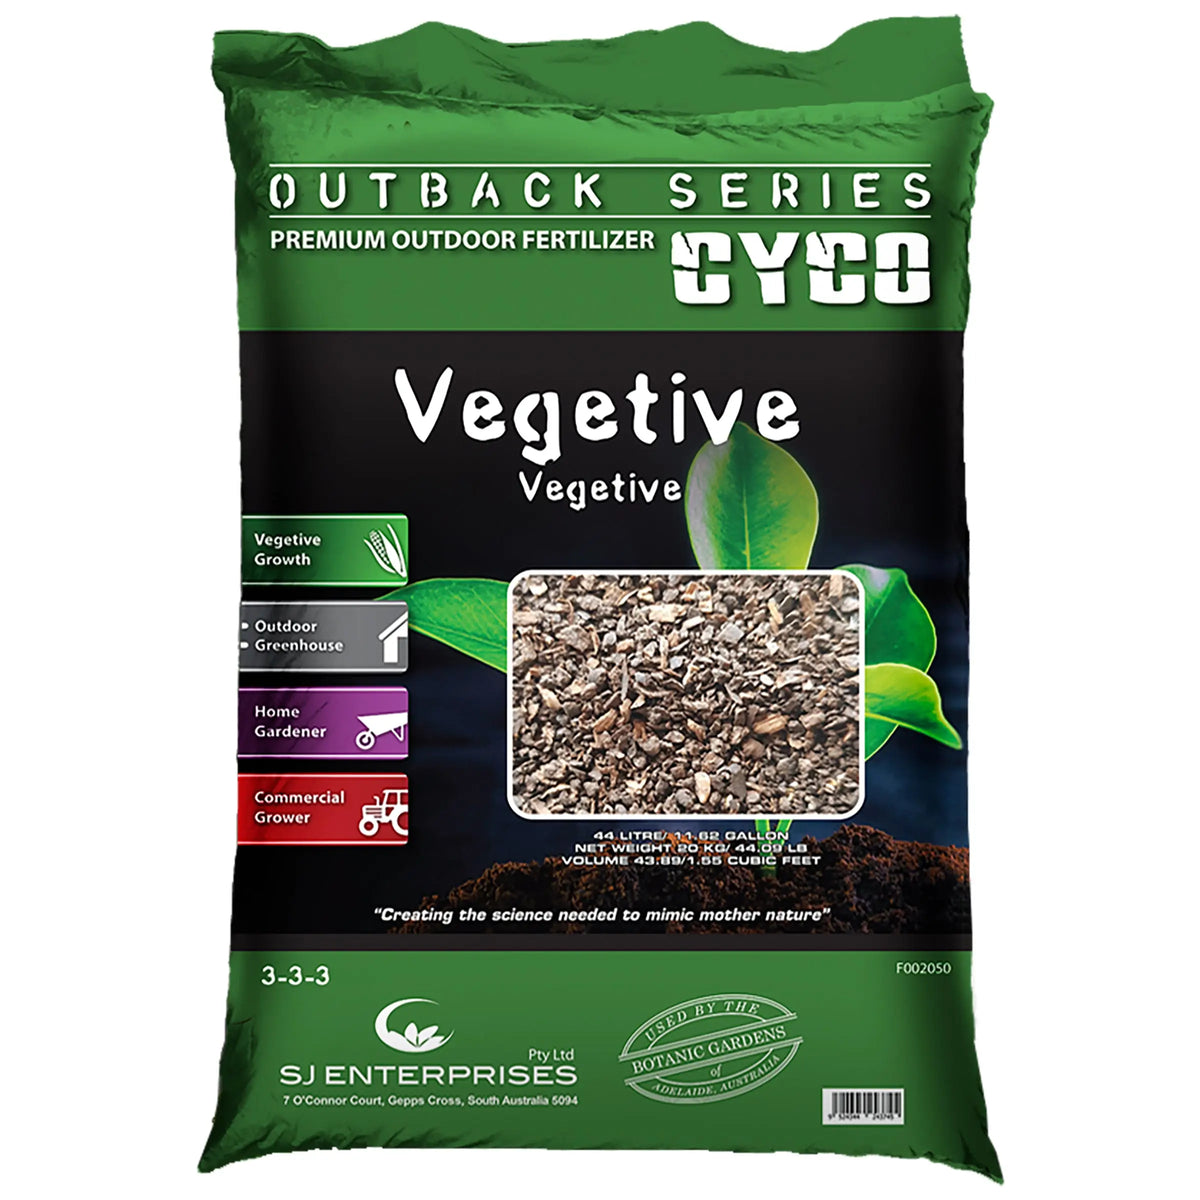 CYCO® Outback Series Vegetive, 20 kg / 44 lb CYCO